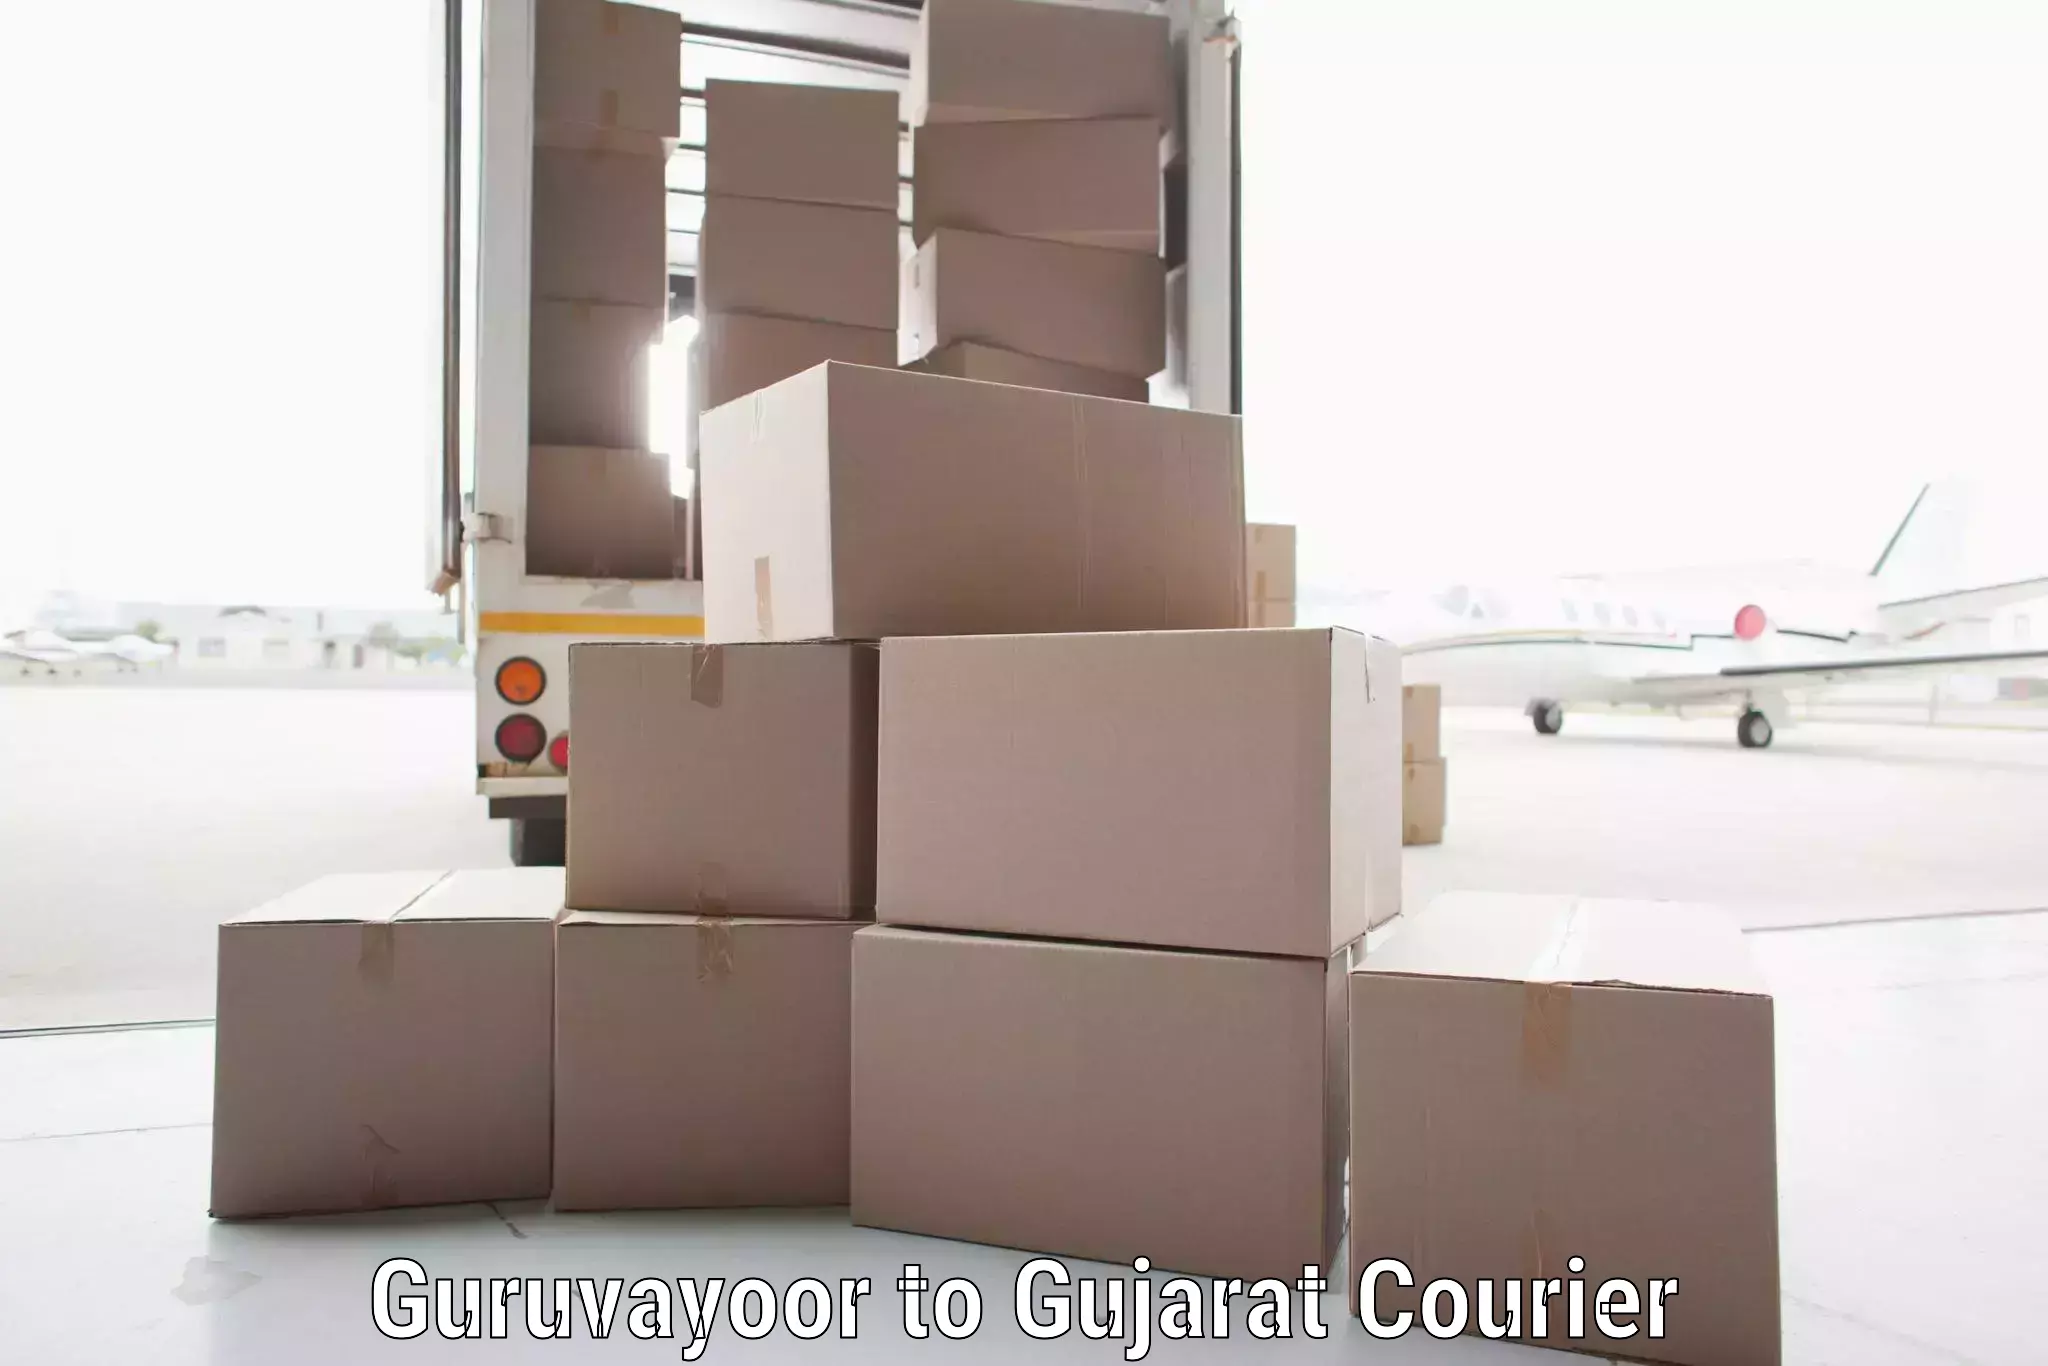 Premium delivery services Guruvayoor to Kachchh